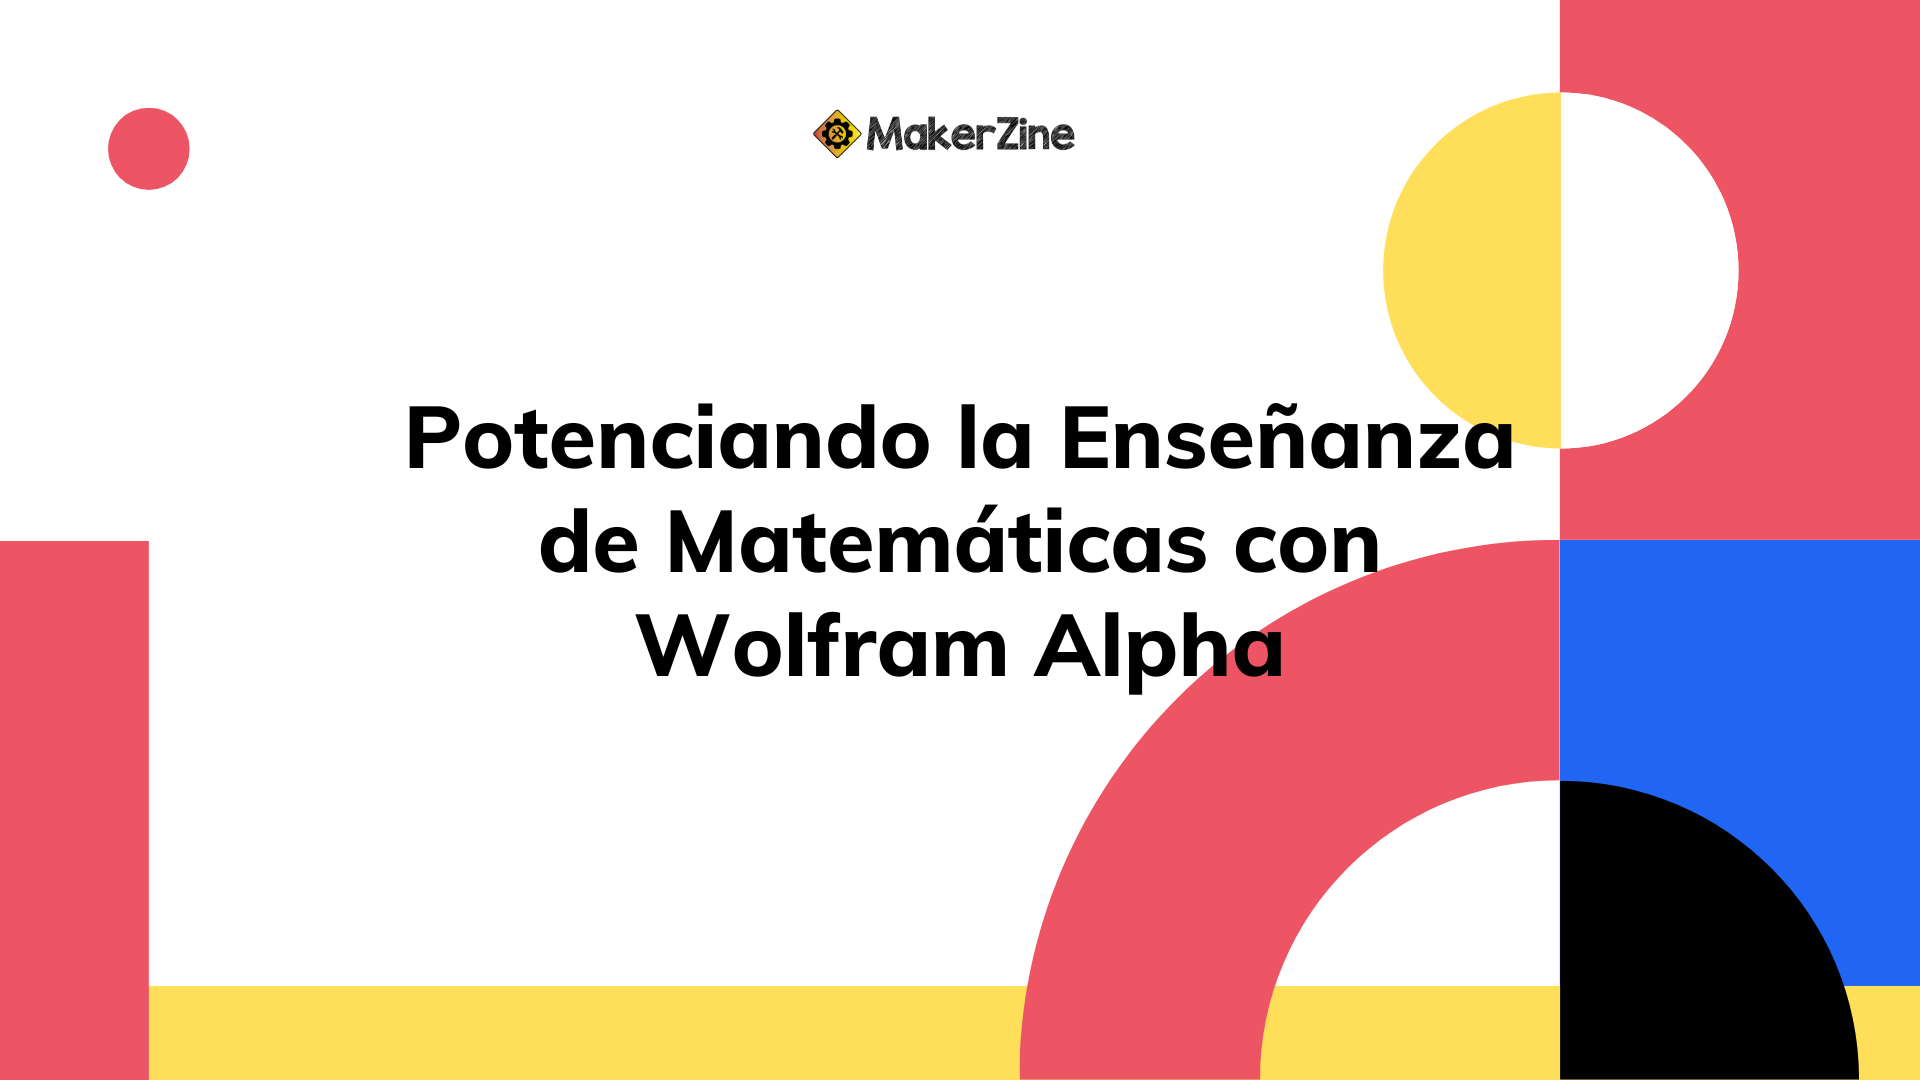 En este momento estás viendo Potenciando la Enseñanza de Matemáticas con Wolfram Alpha